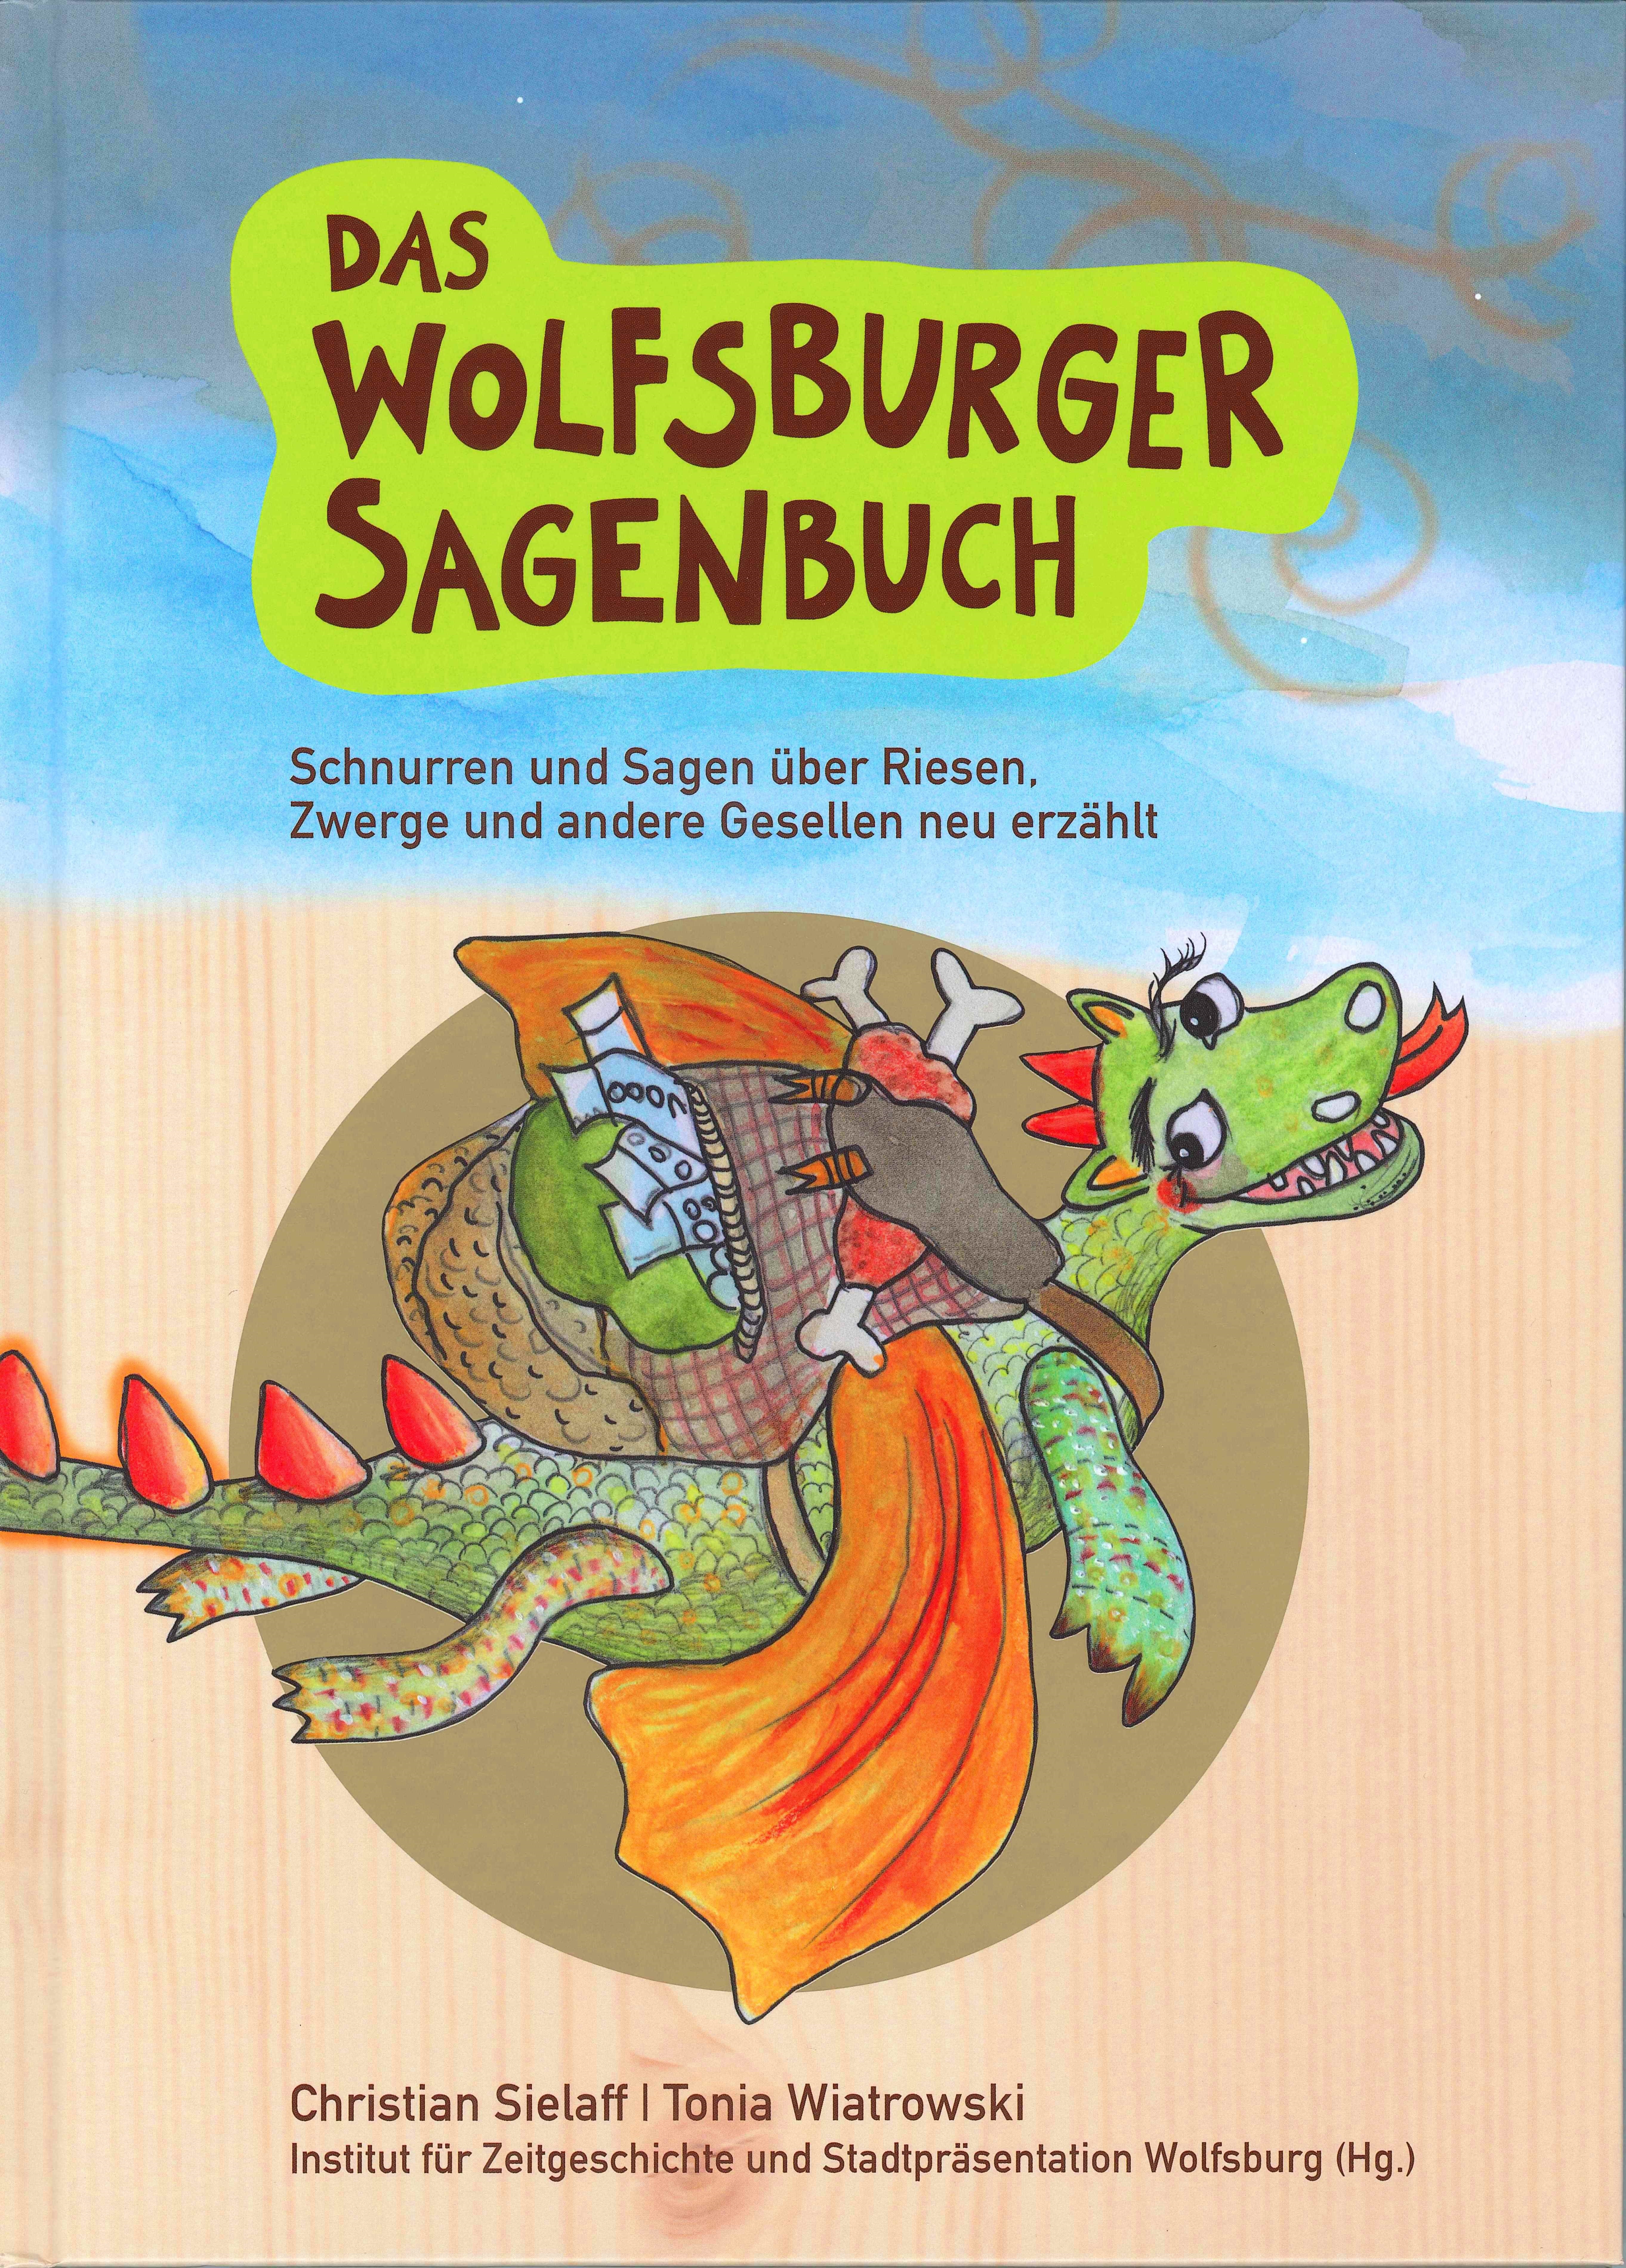 Coverbild ein gemalter Drache des Buches: Das Wolfsburger Sagenbuch